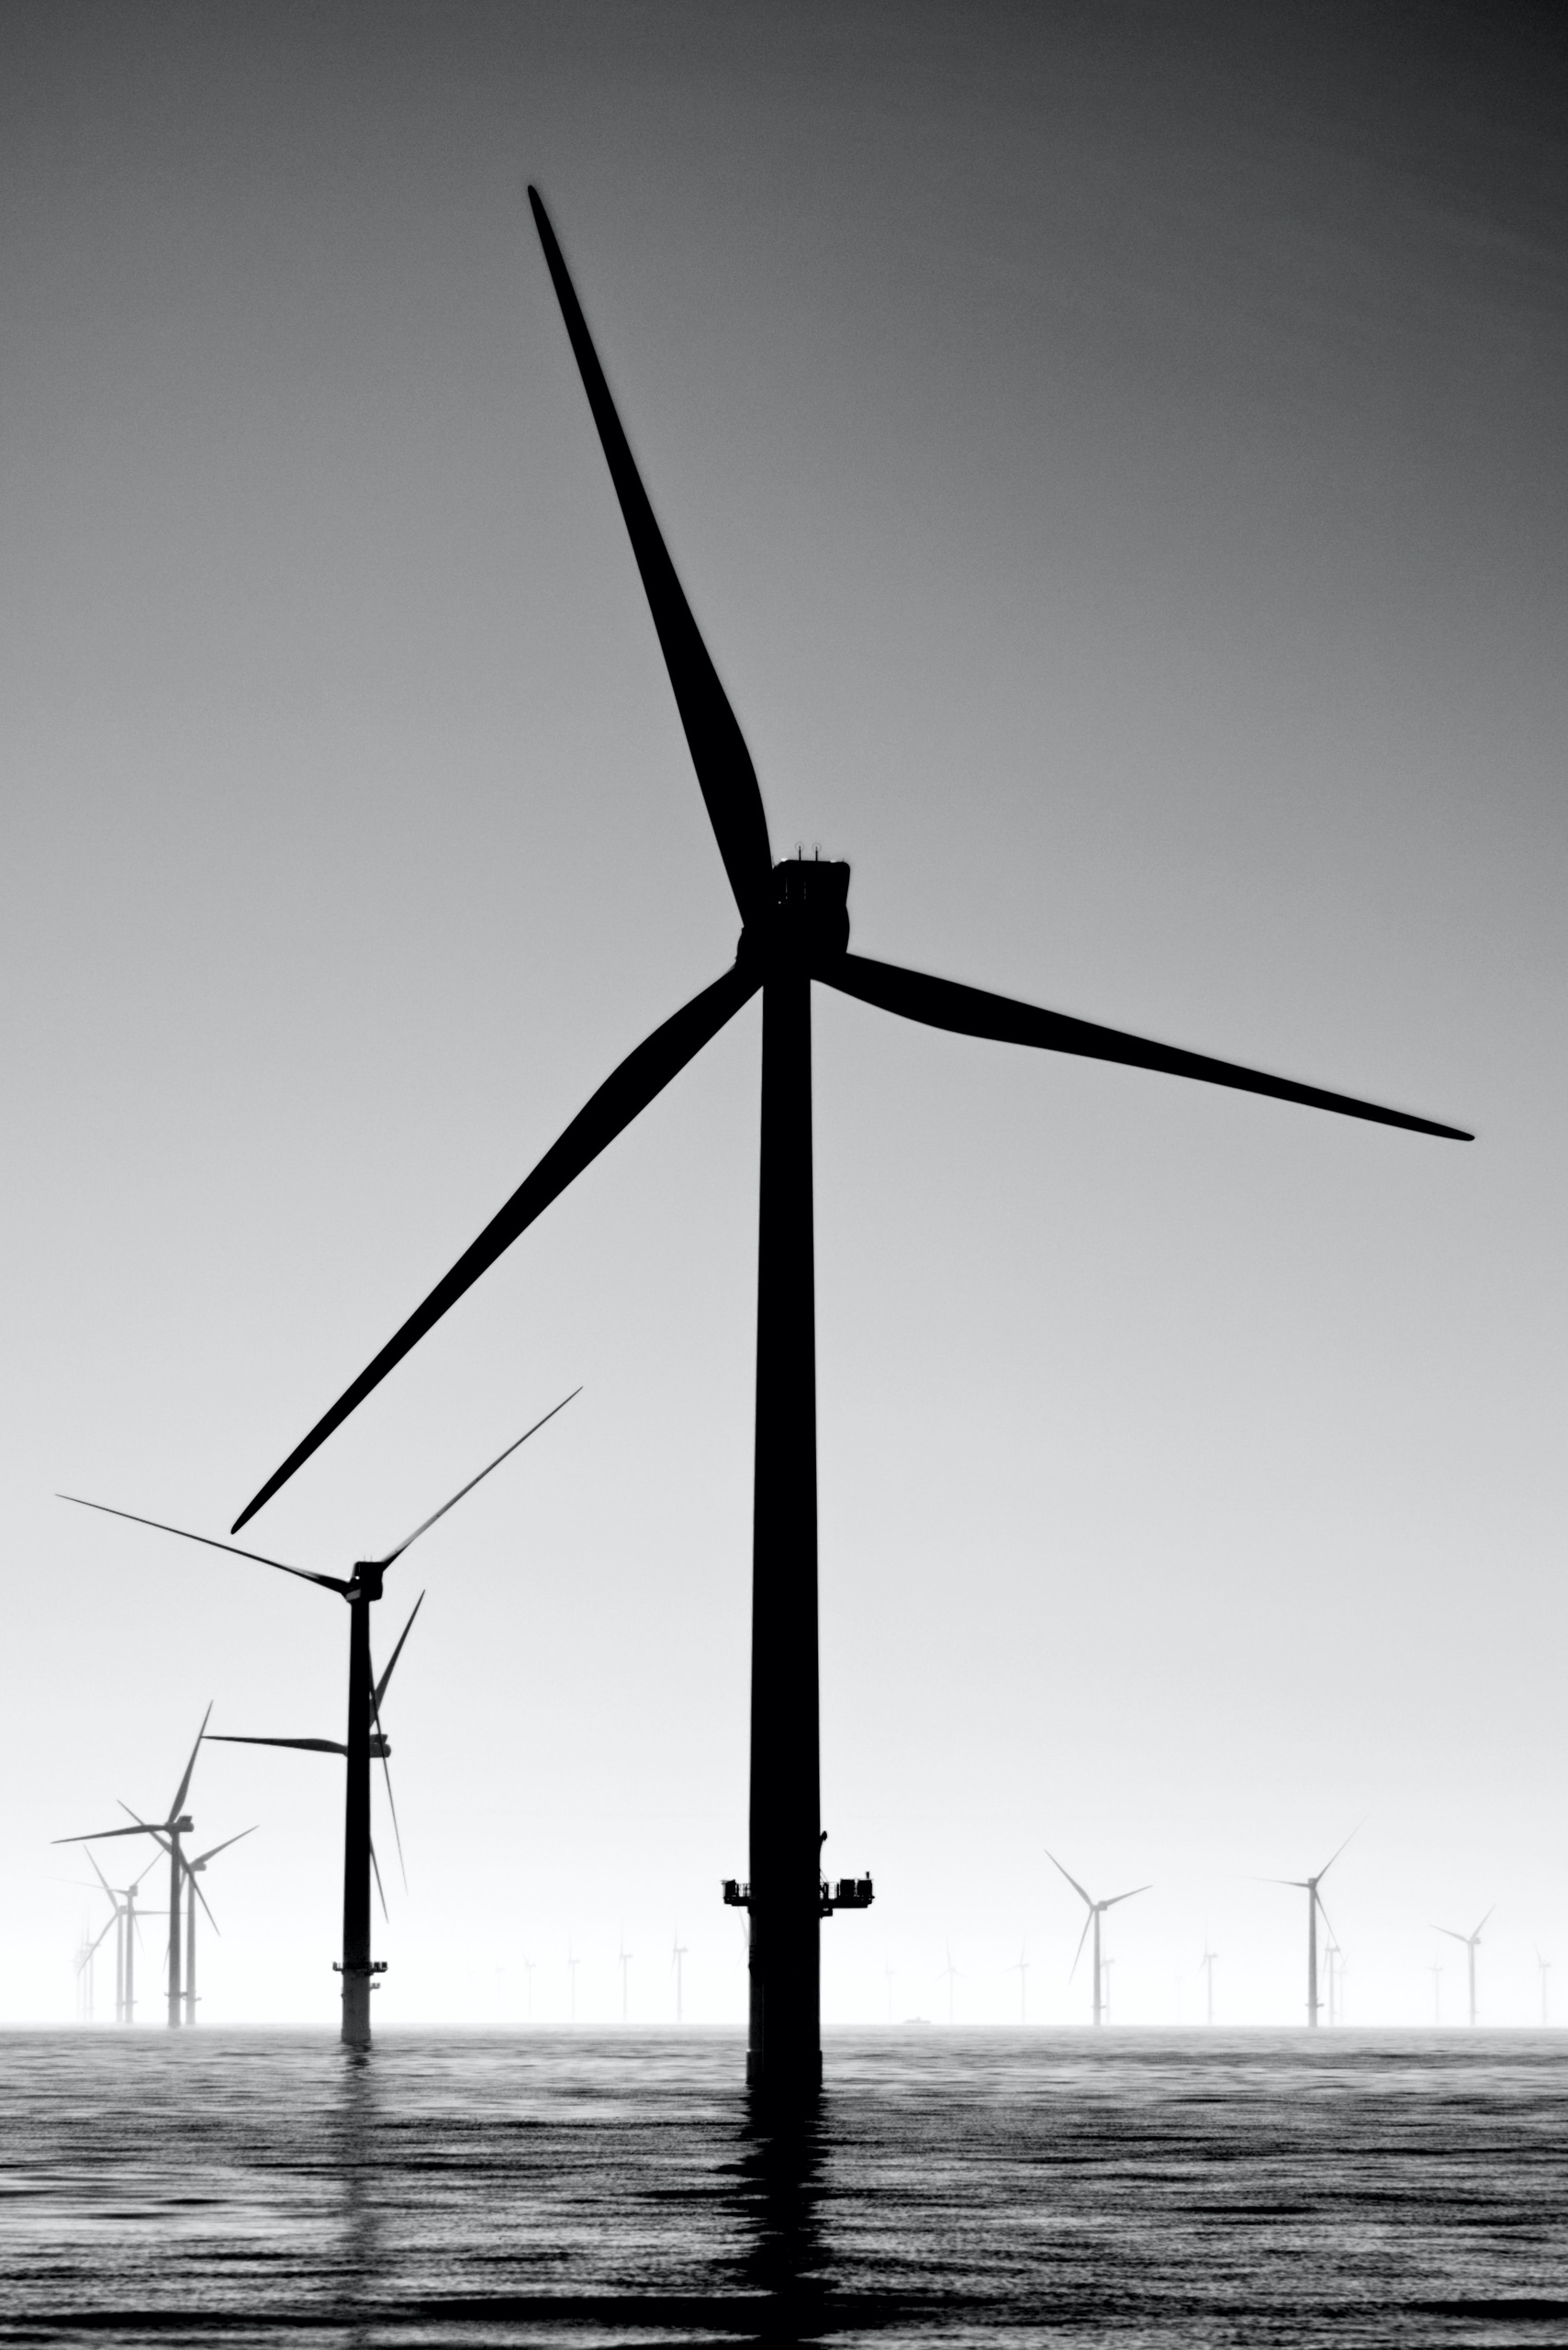 Het is het nog niet zeker of de energie die wordt opgewekt door windparken op zee in 2030 winstgevend zal zijn. Dat stelt onderzoeksbureau TNO.